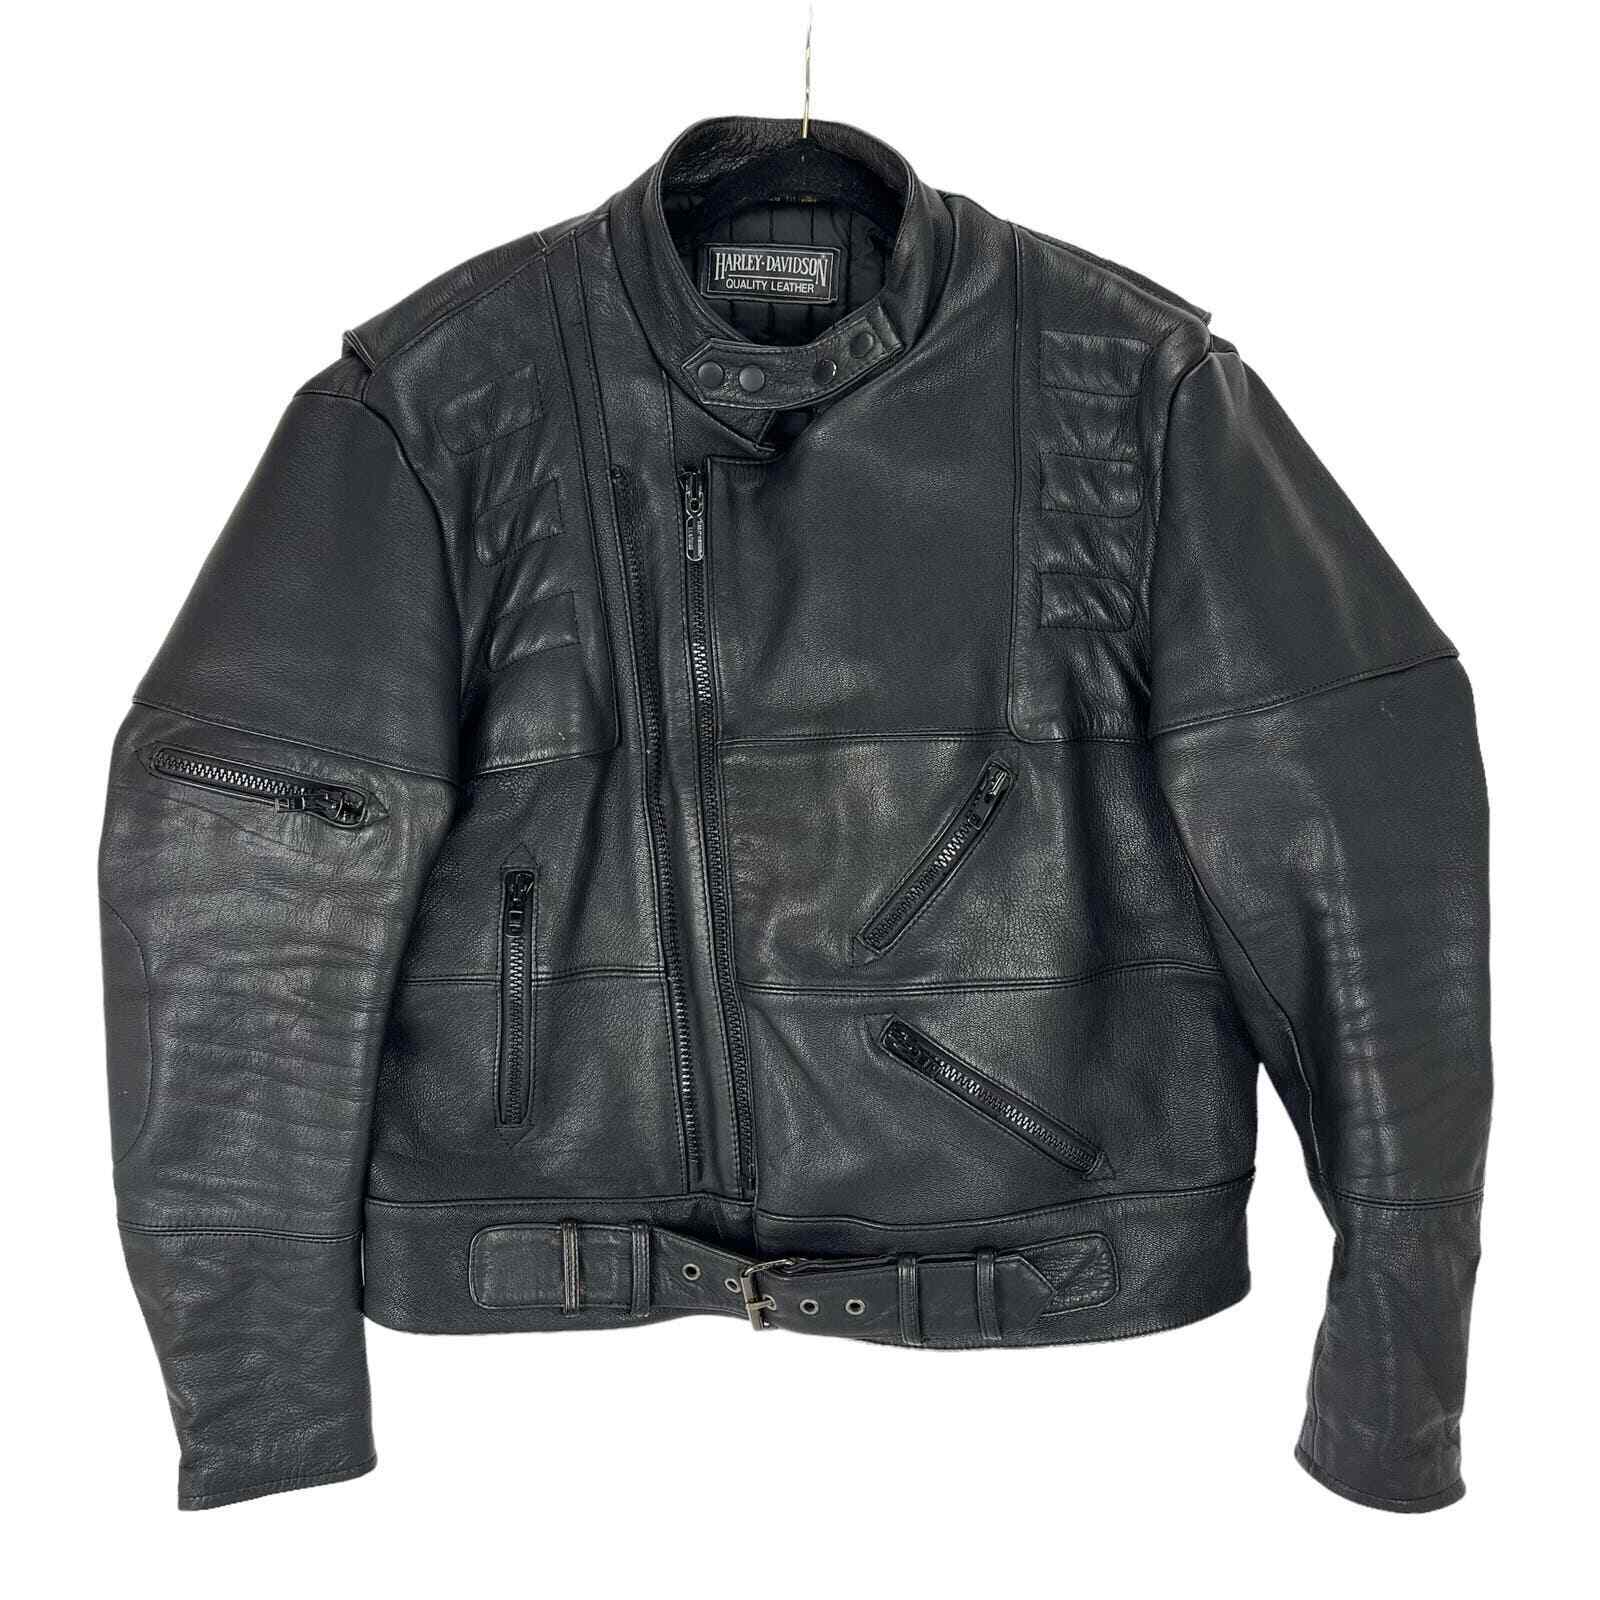 Vintage Harley Davidson Black Leather Jacket Size 48